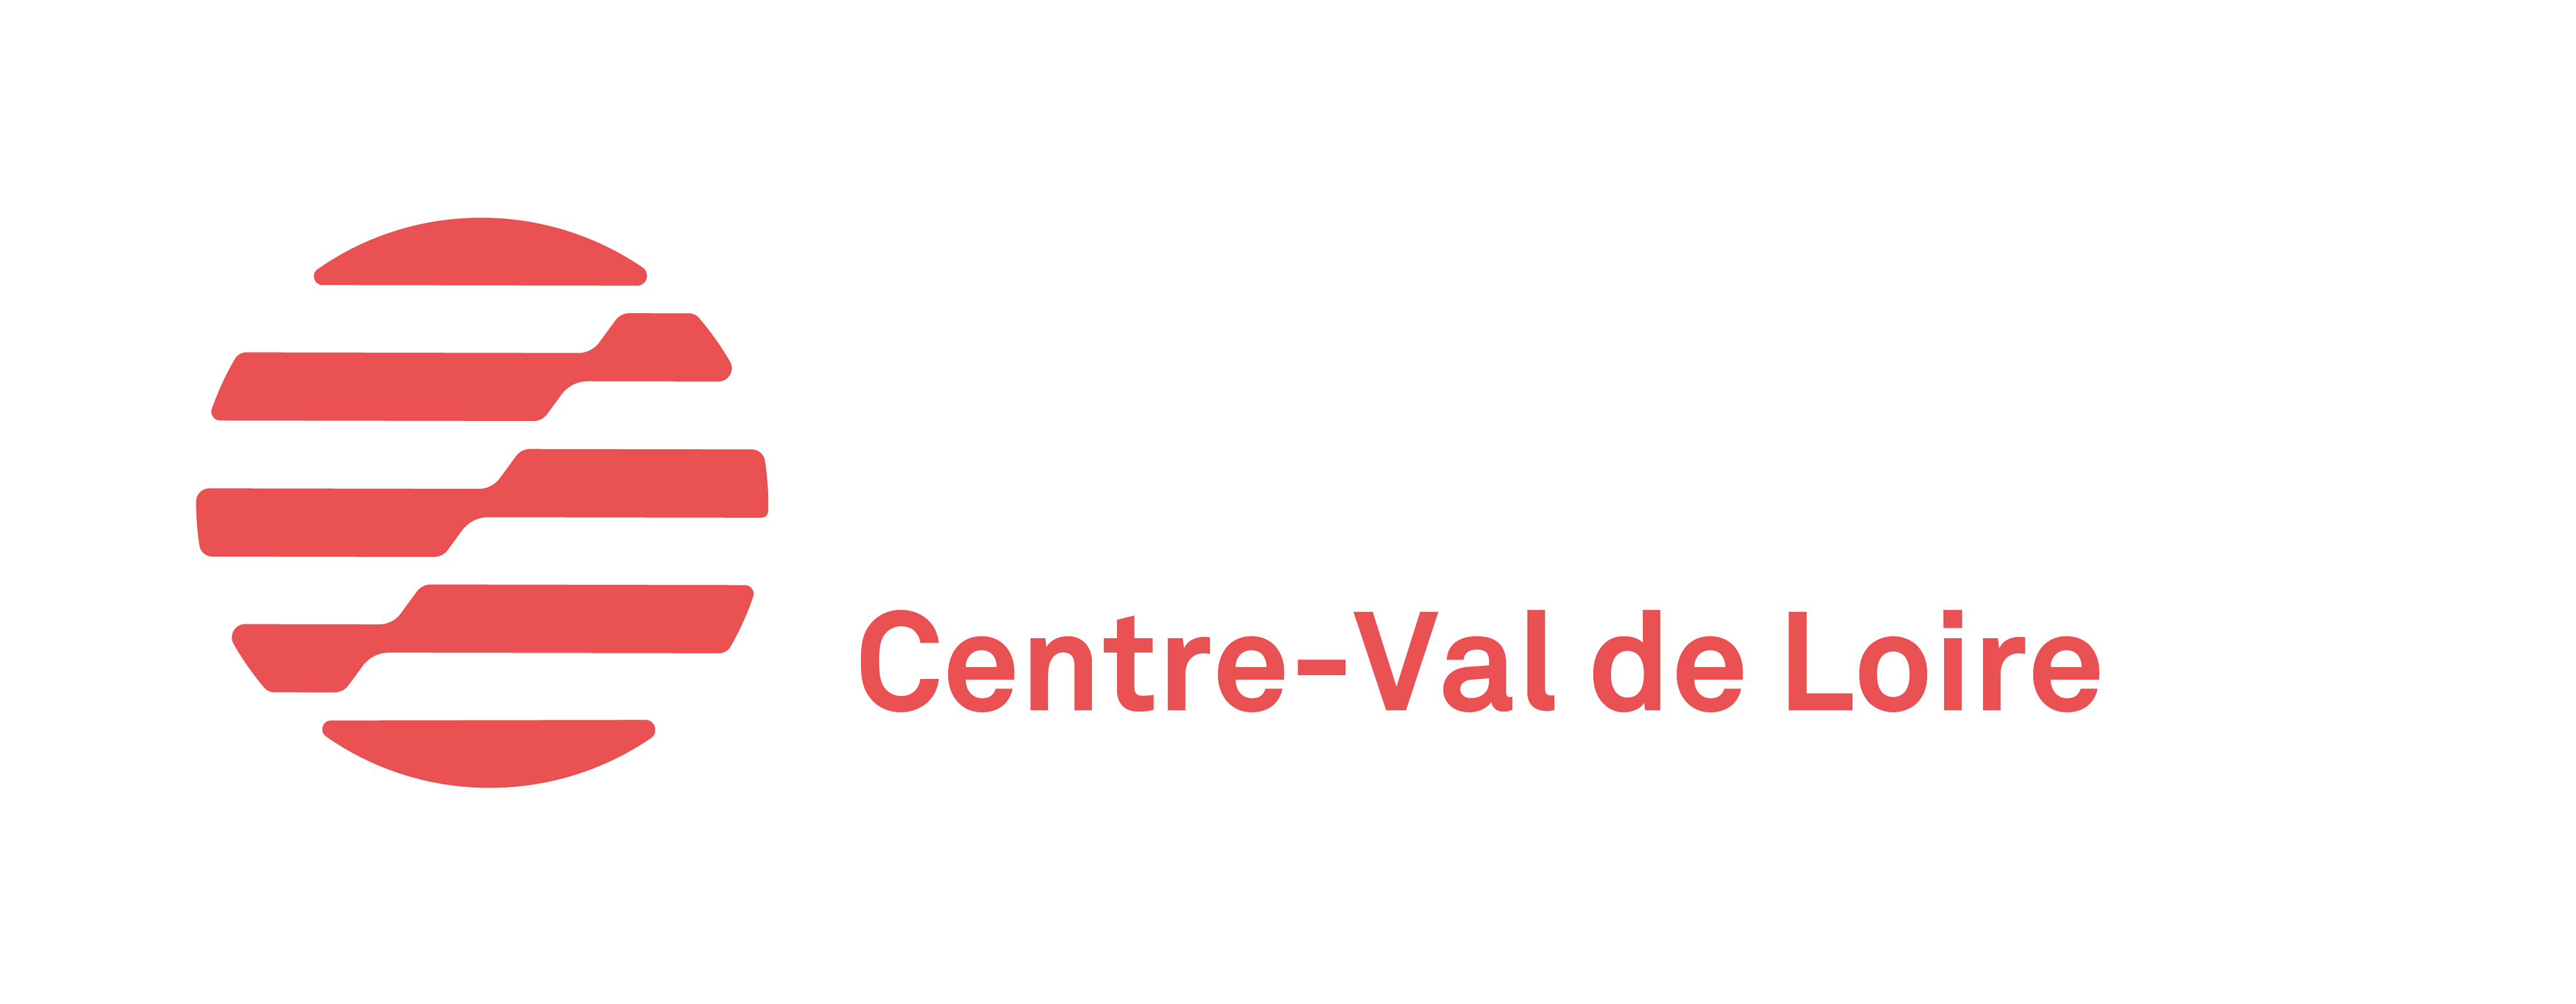 Coorace Centre-Val-de-Loire